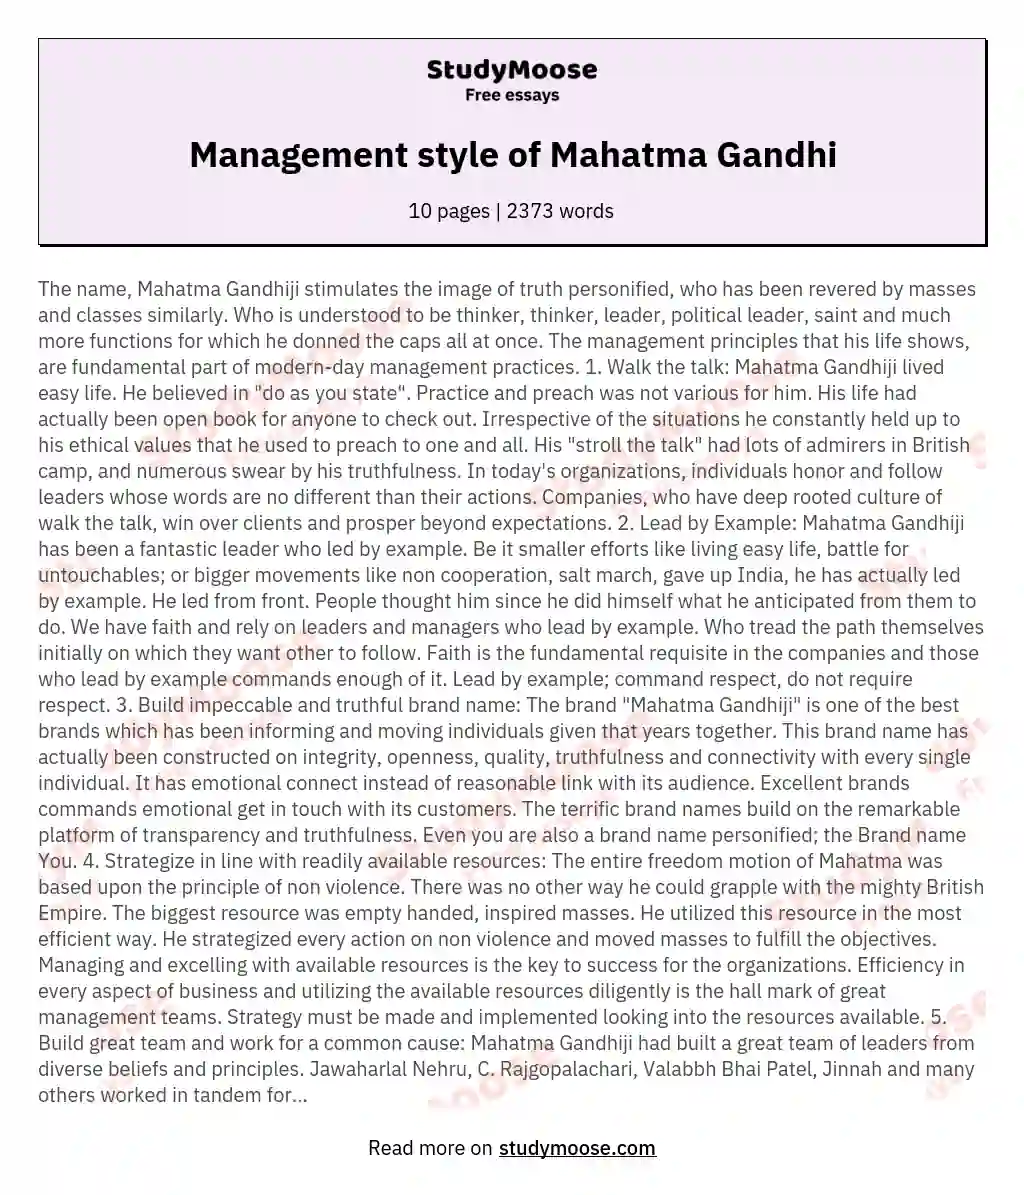 Management style of Mahatma Gandhi essay